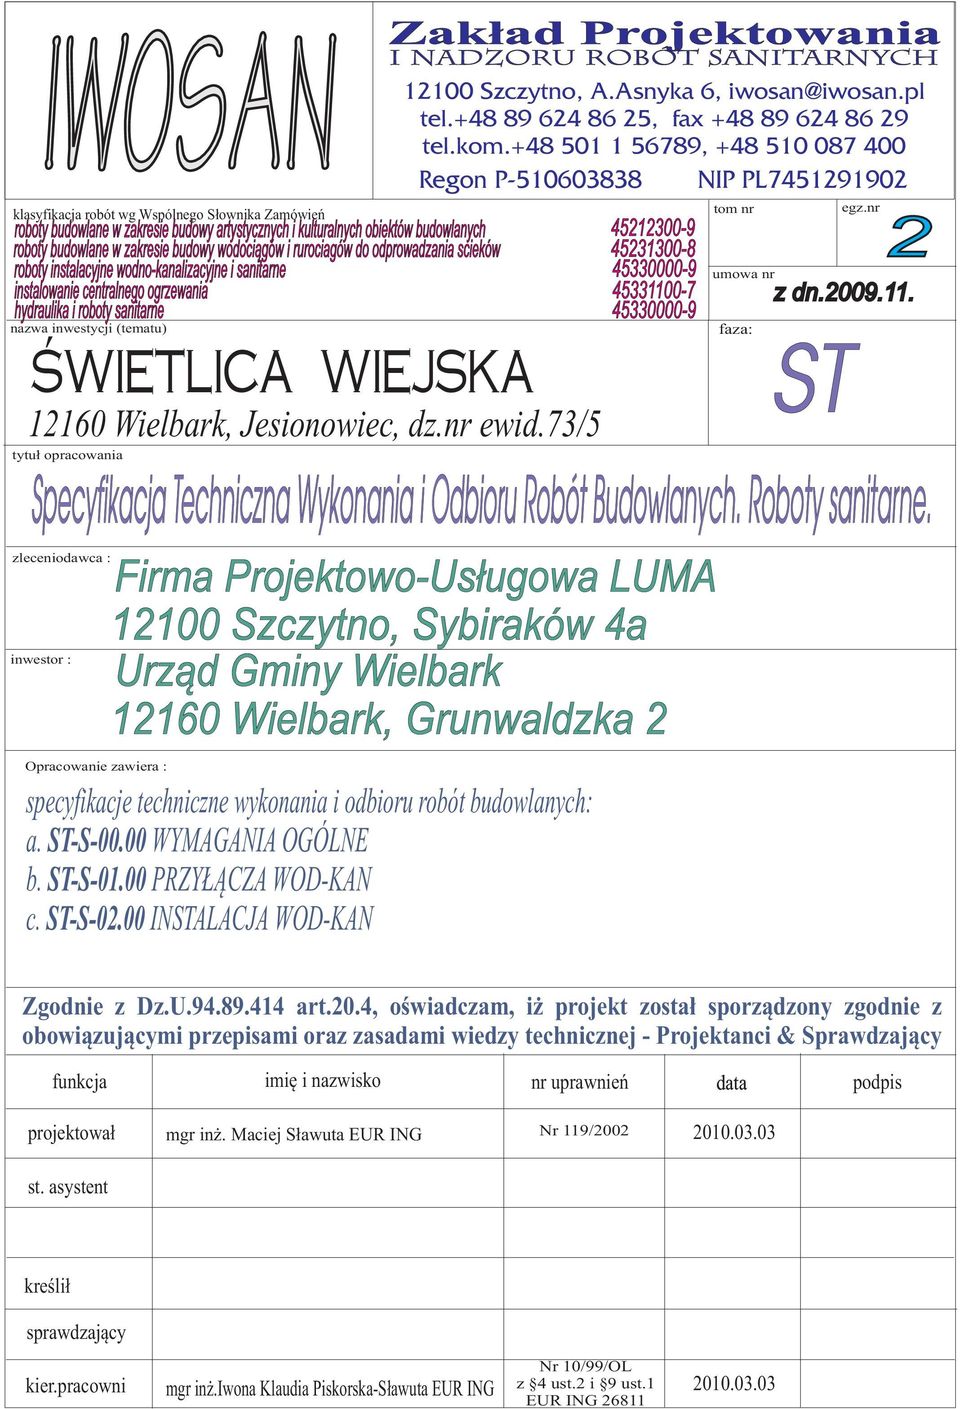 45330000-9 nazwa inwestycji (tematu) ŚWIETLICA WIEJSKA 12160 Wielbark, Jesionowiec, dz.nr ewid.